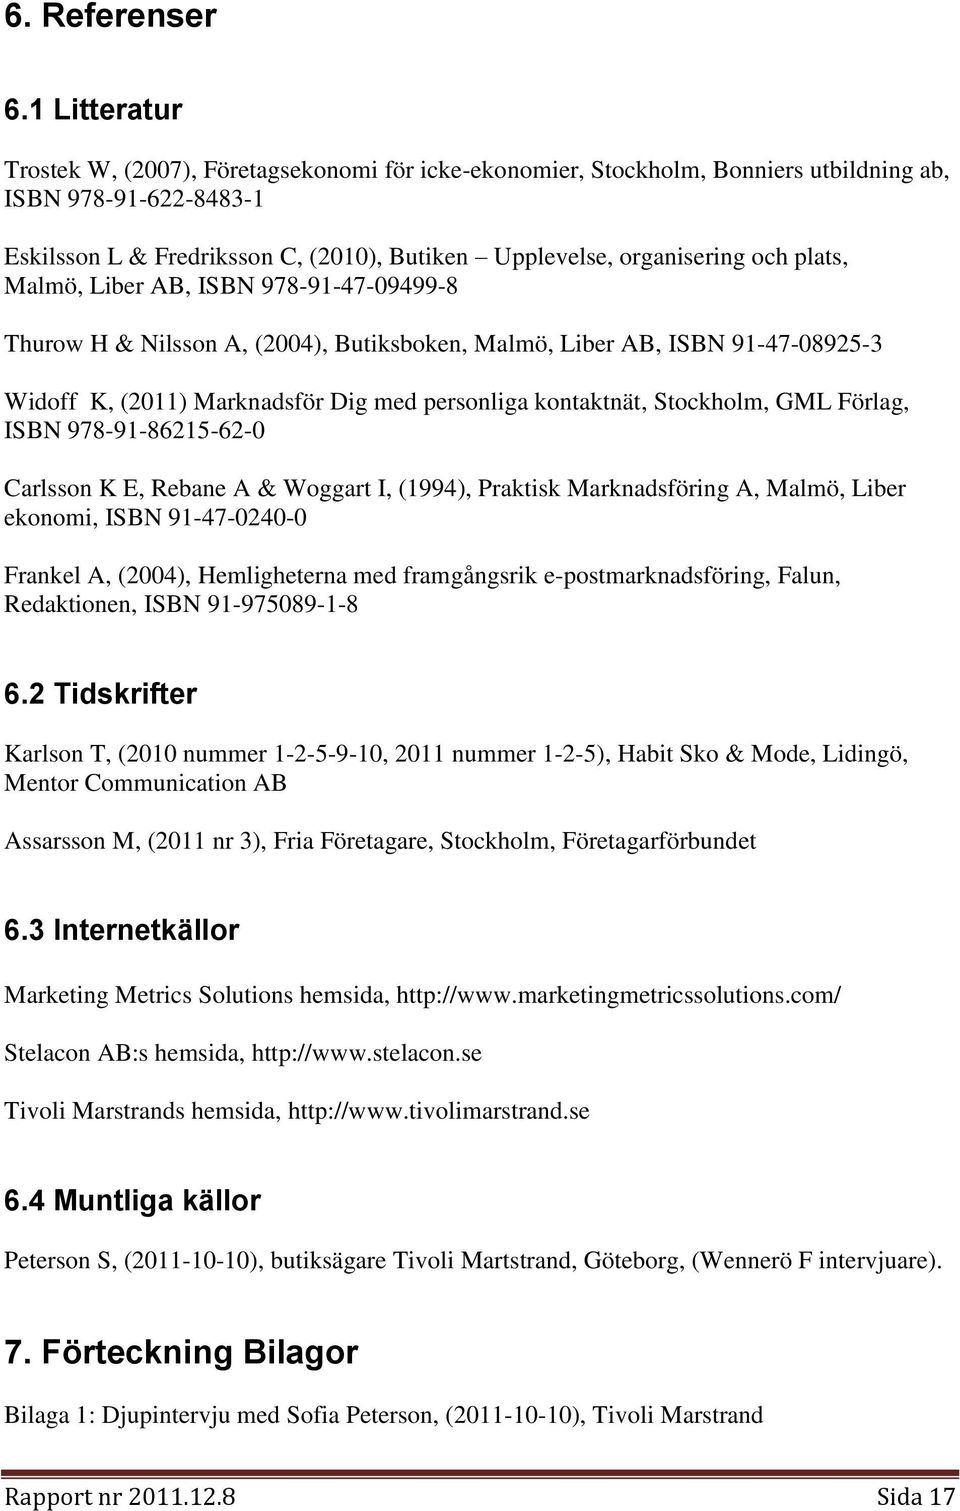 plats, Malmö, Liber AB, ISBN 978-91-47-09499-8 Thurow H & Nilsson A, (2004), Butiksboken, Malmö, Liber AB, ISBN 91-47-08925-3 Widoff K, (2011) Marknadsför Dig med personliga kontaktnät, Stockholm,